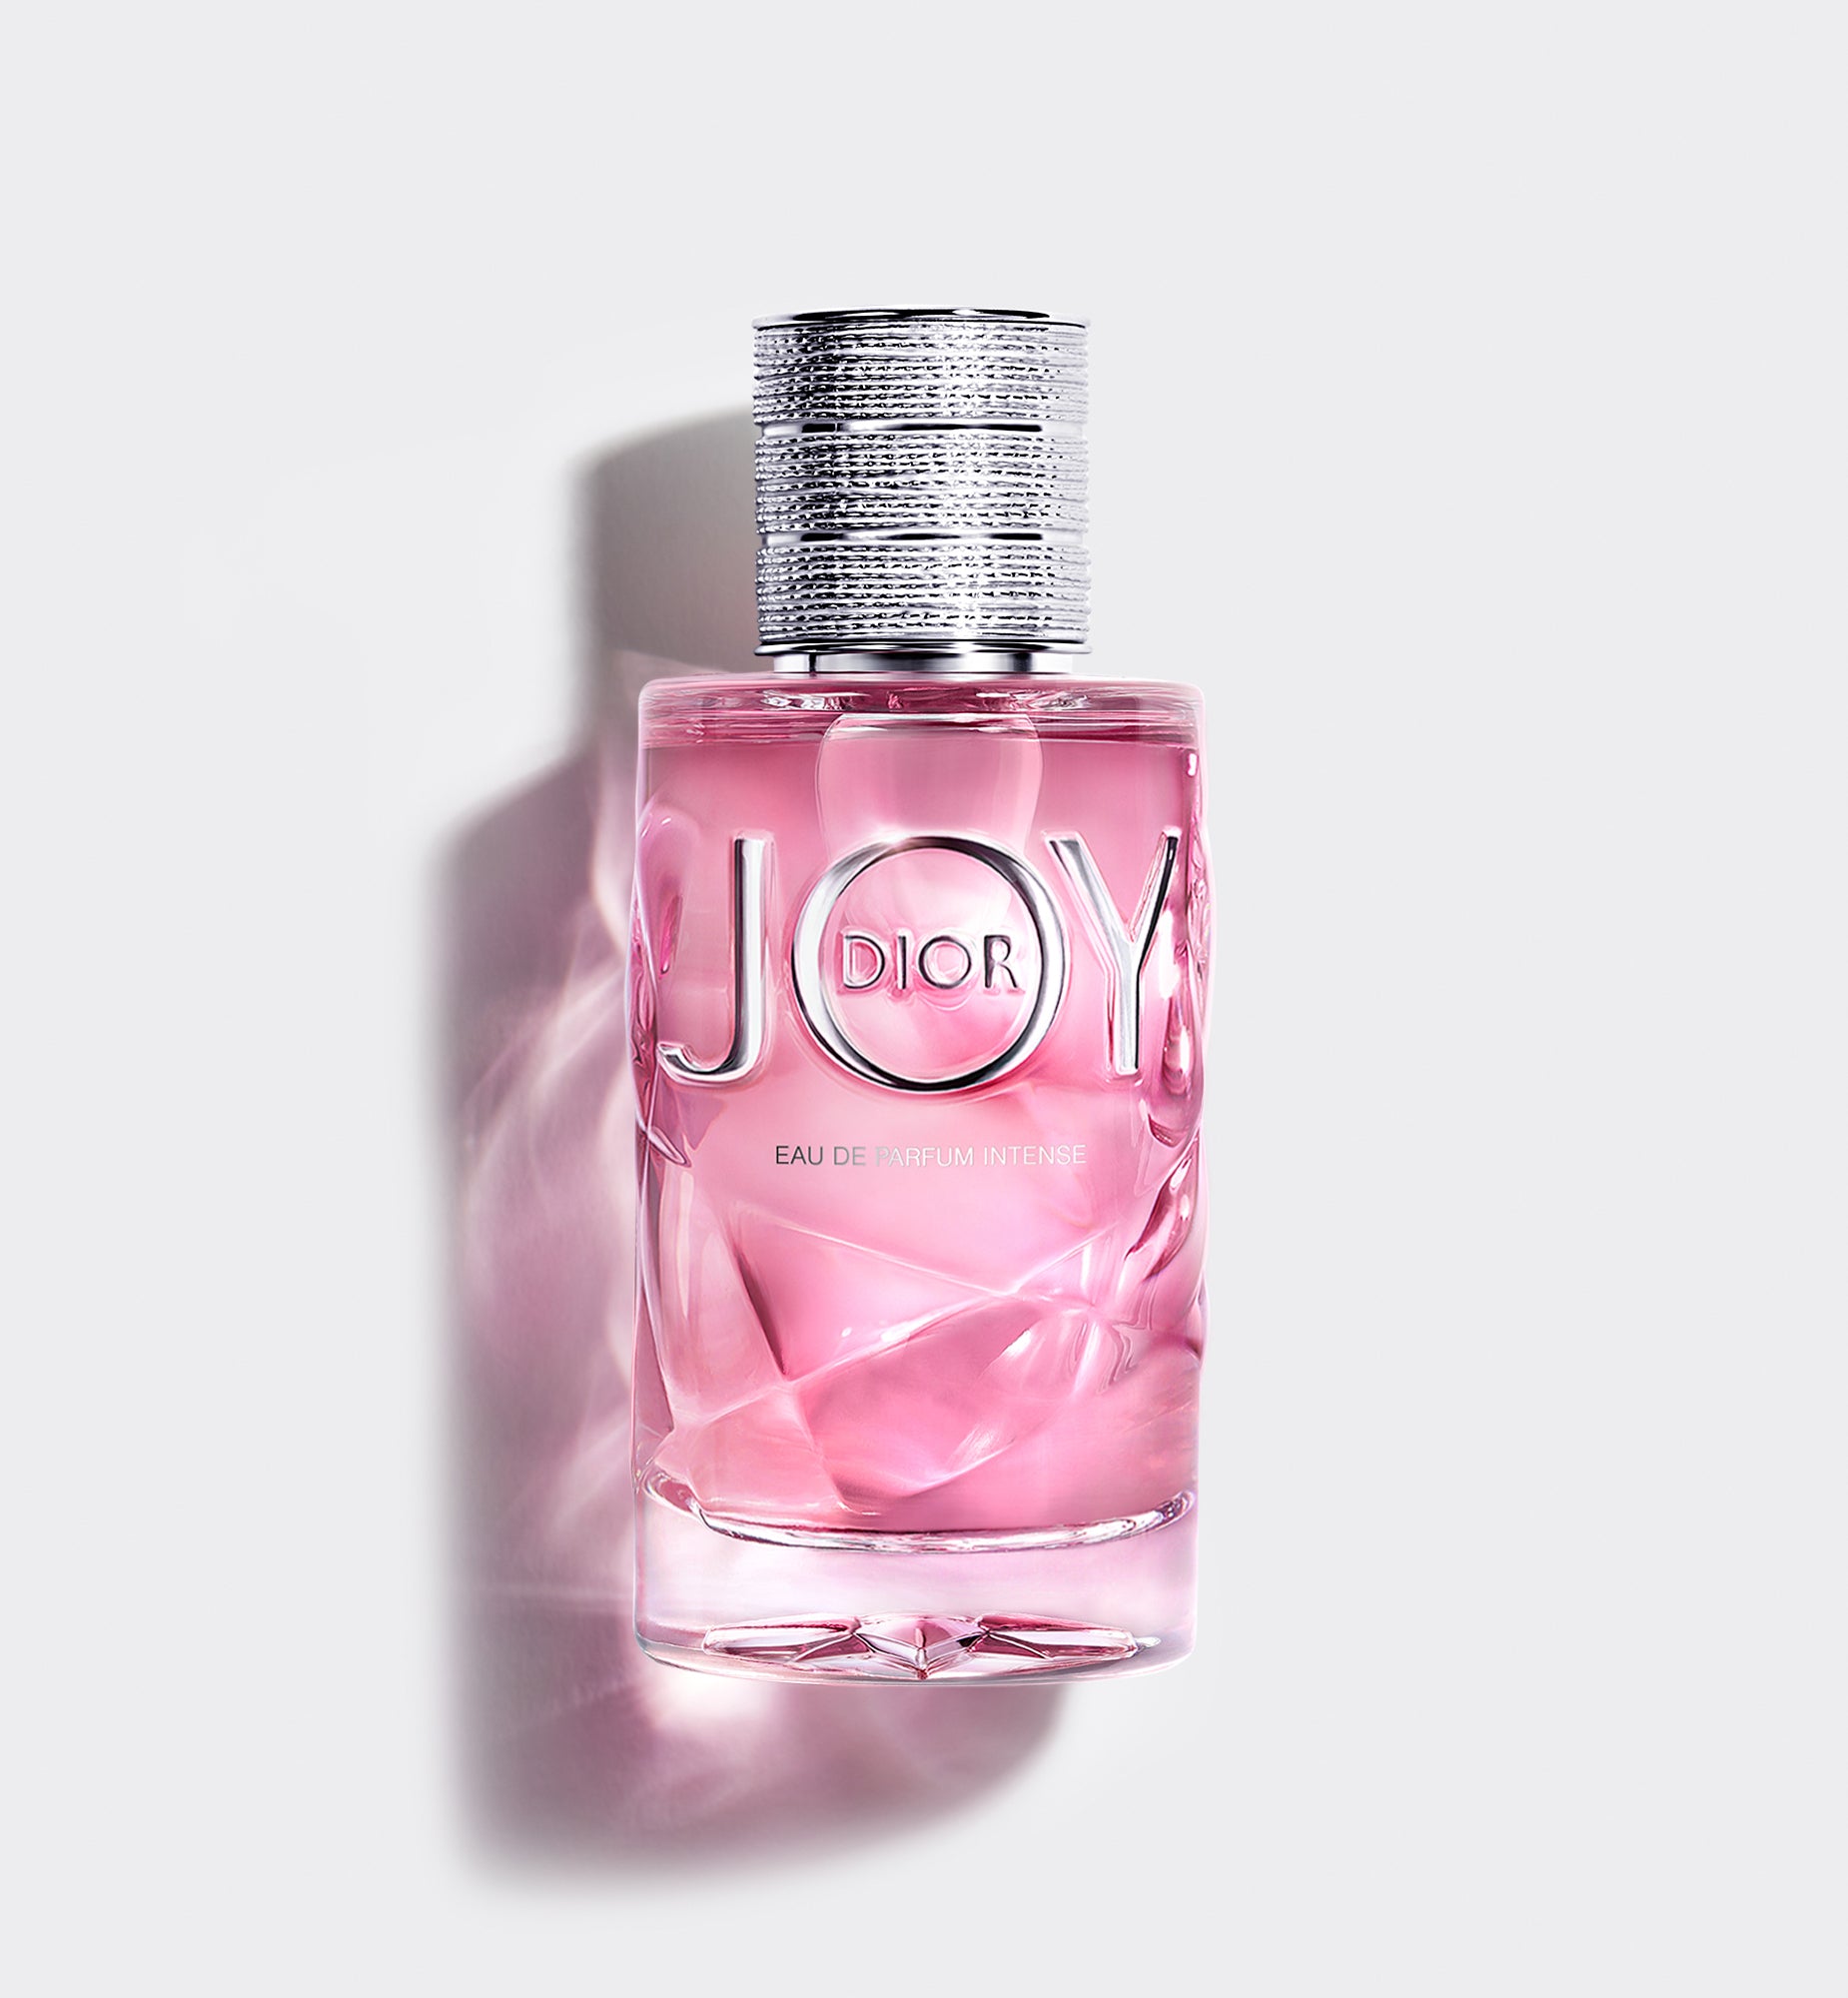 น้ำหอมกลิ่นดอกไม้ JOY BY DIOR EAU DE FARFUM INTENSE—Eau de parfum intense—น้ำหอมกลิ่นดอกไม้เข้มข้น กลิ่นหอมหวานเย้ายวน ให้ความสดชื่น ติดทนนาน